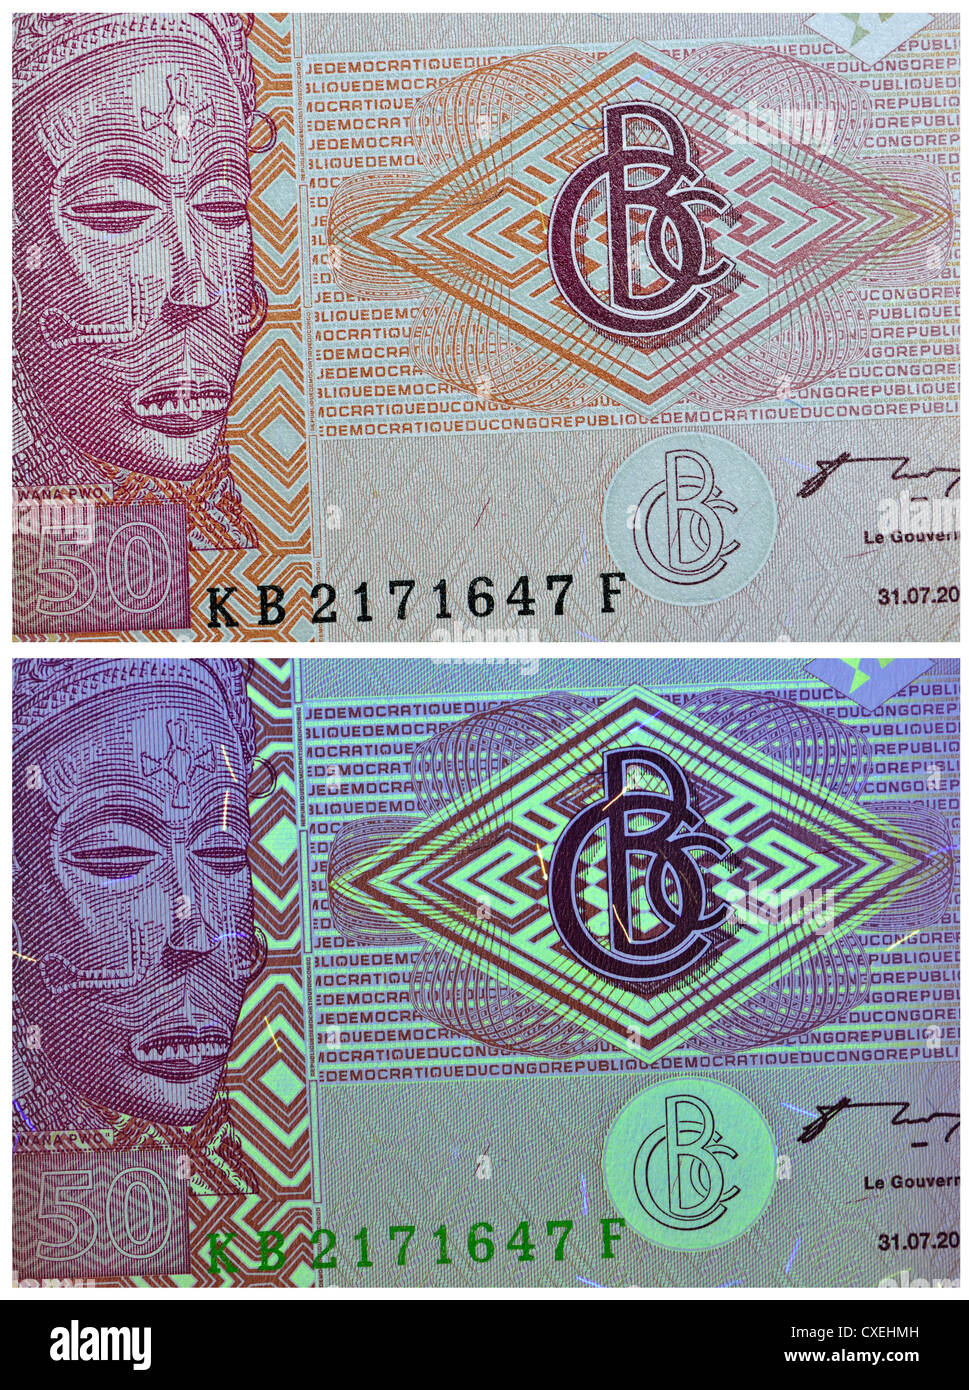 Vu des billets avec la lumière naturelle et la lumière UV, montrant les fonctions de sécurité. 50 francs, le Centre de la République du Congo, 2007 Banque D'Images